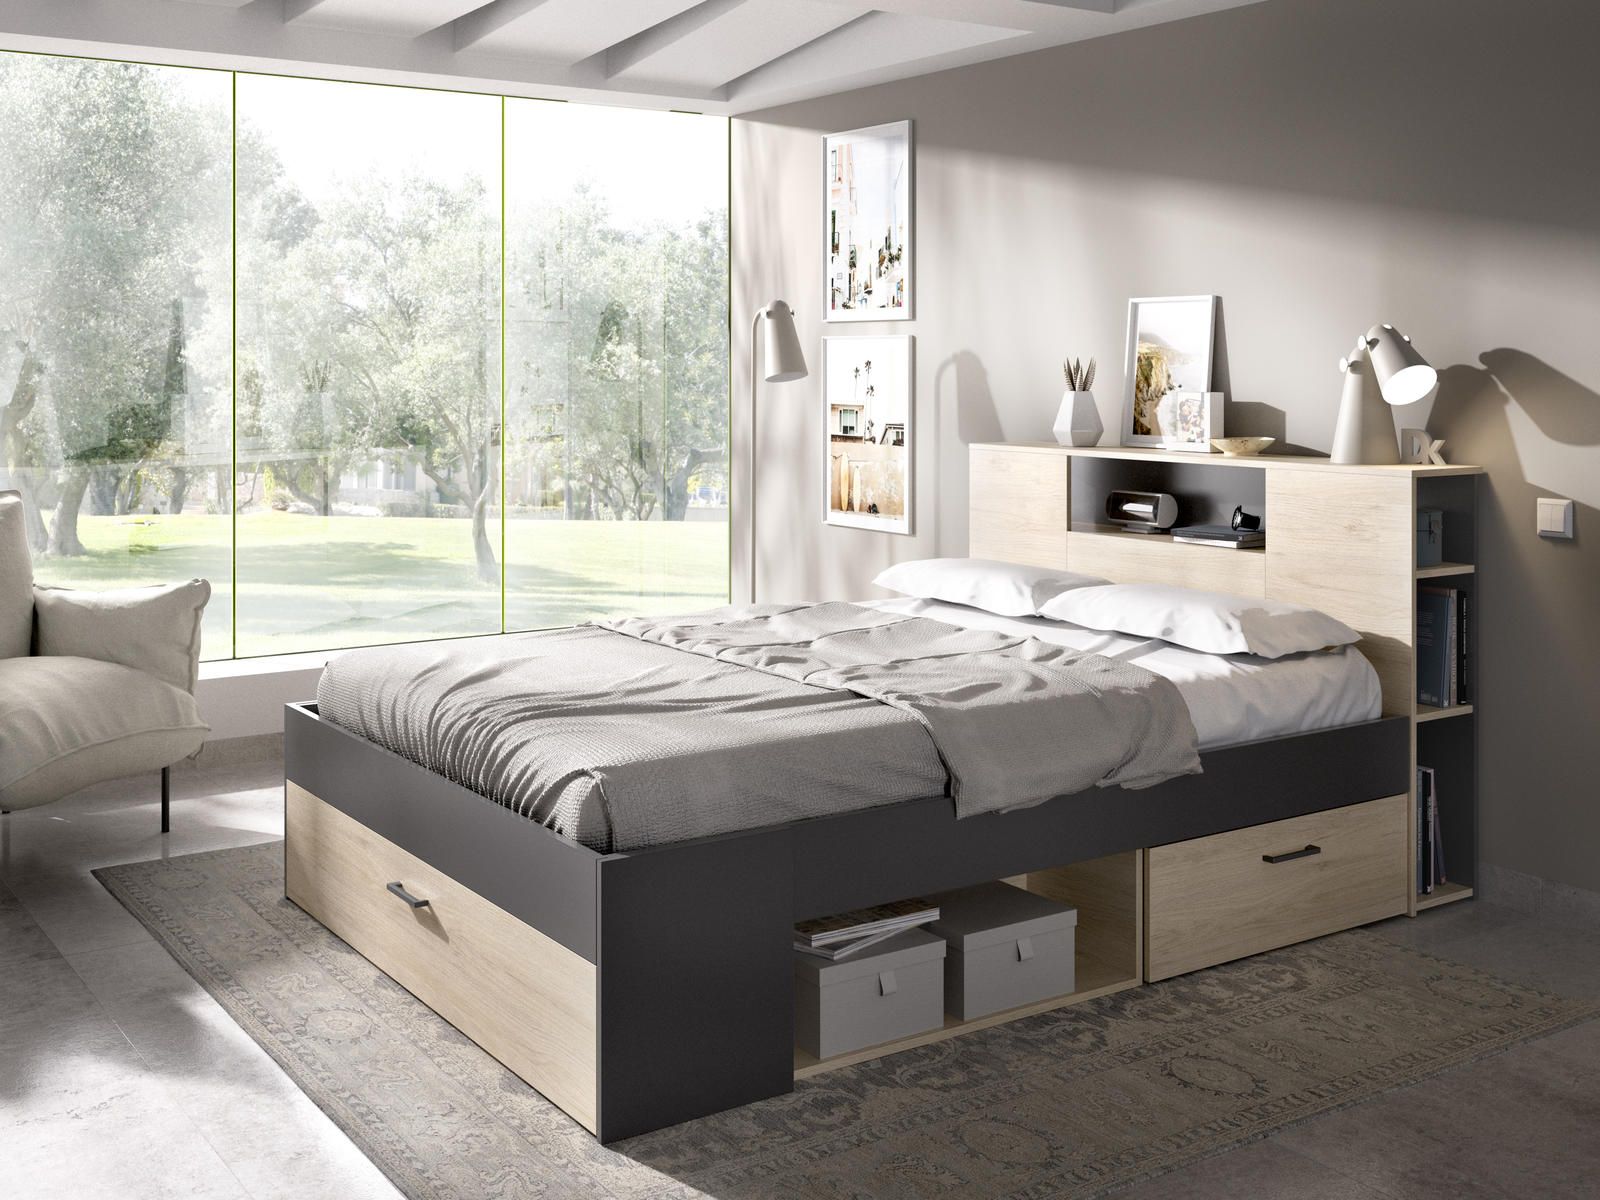 Aldo Manželská postel s řadou úložných prostorů, nadstavcem Lanka graphite - Nábytek ALDO